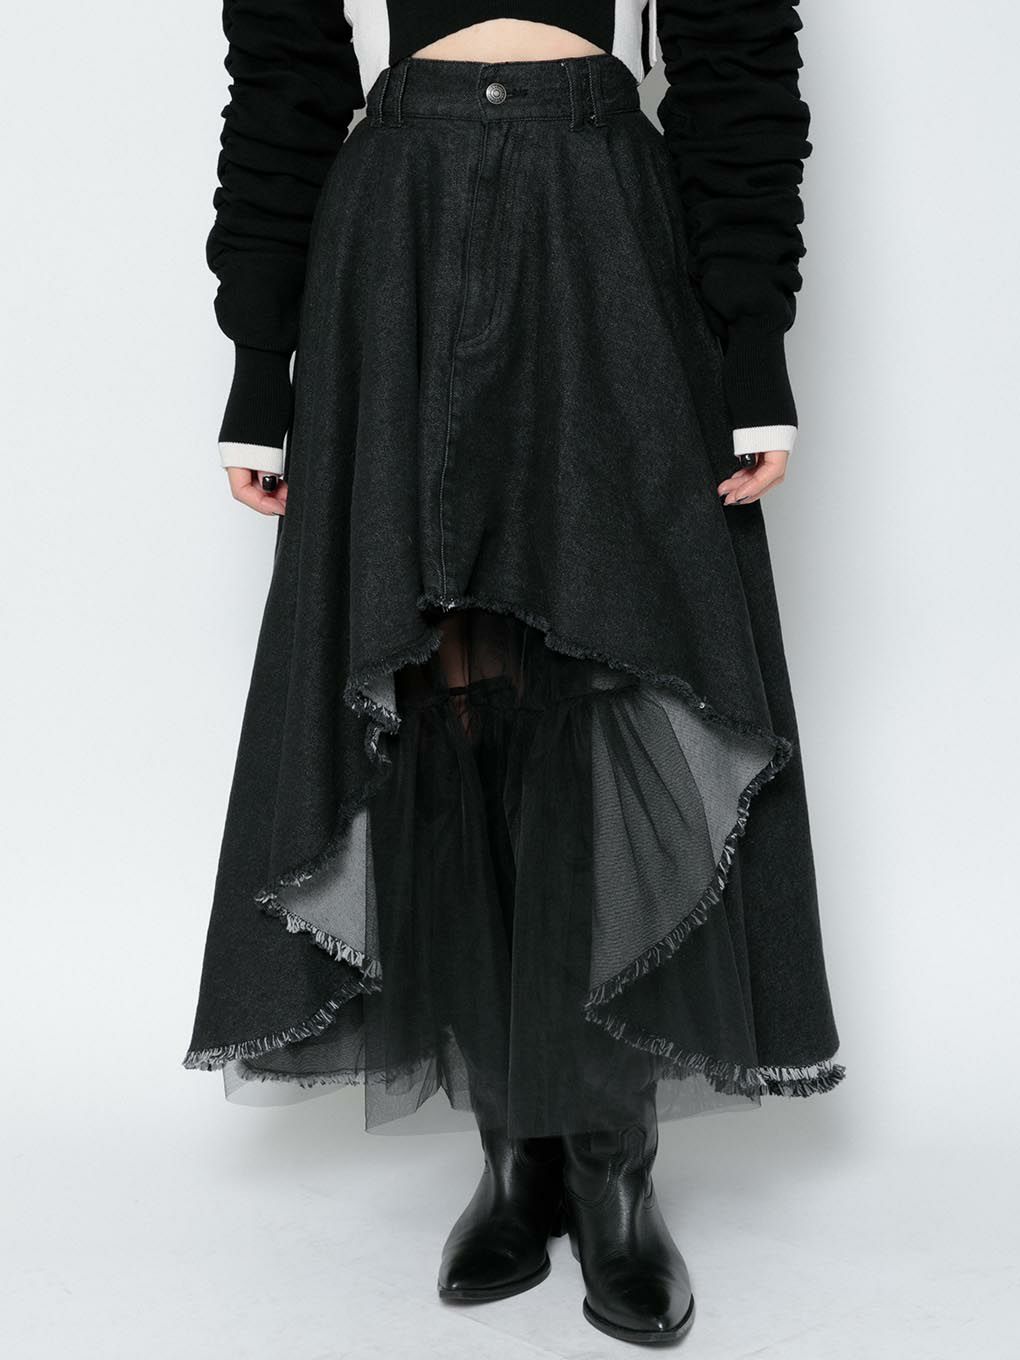 6,300円MELT THE LADY Medieval flare skirt